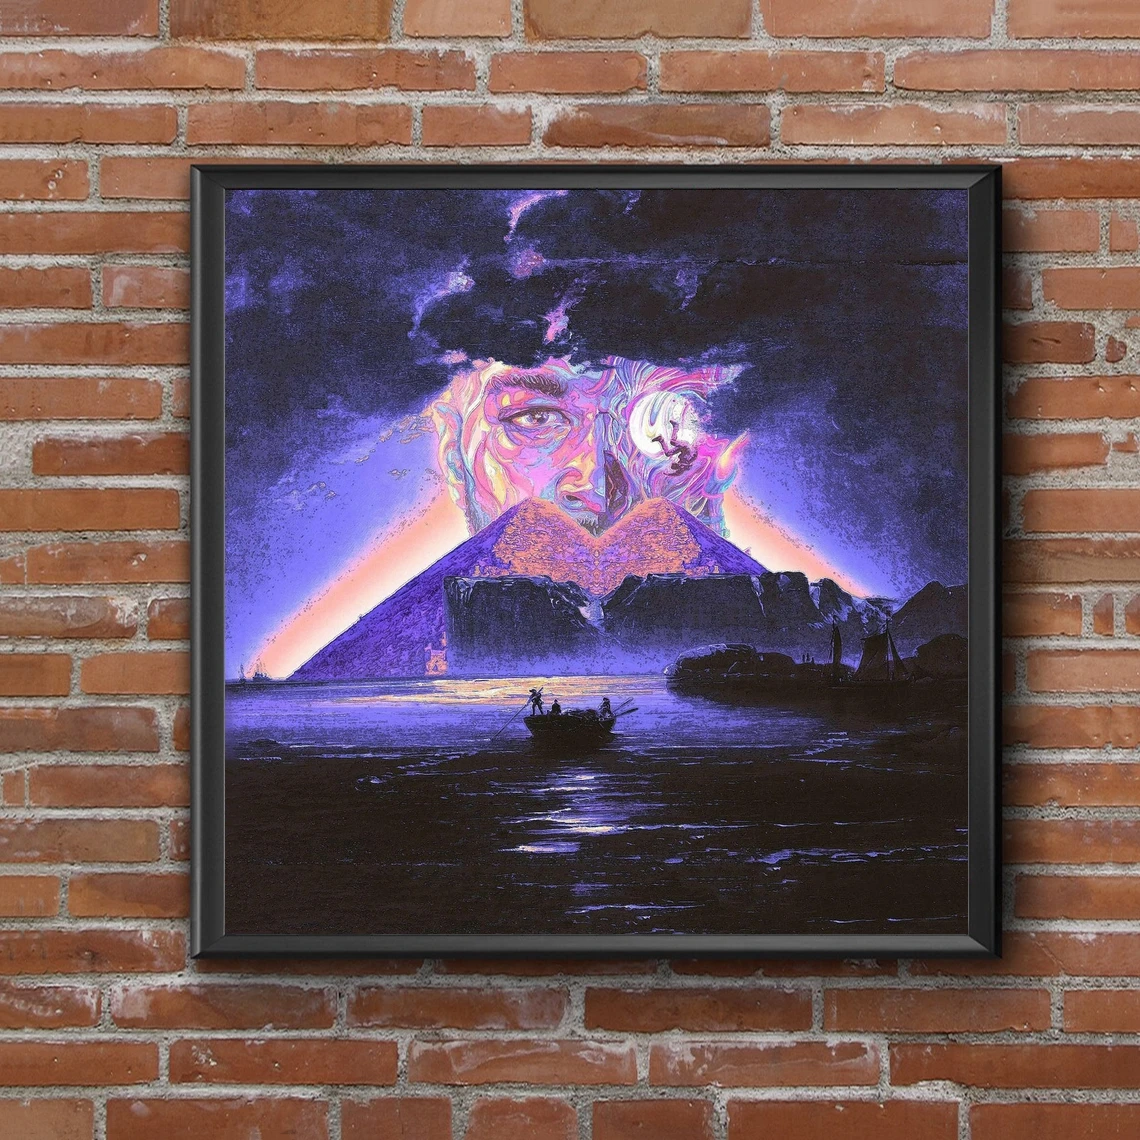 

Альбом с изображением героев музыки малыша куди-человека на Луне III, постер с изображением музыкальной звезды, певицы на холсте, художествен...